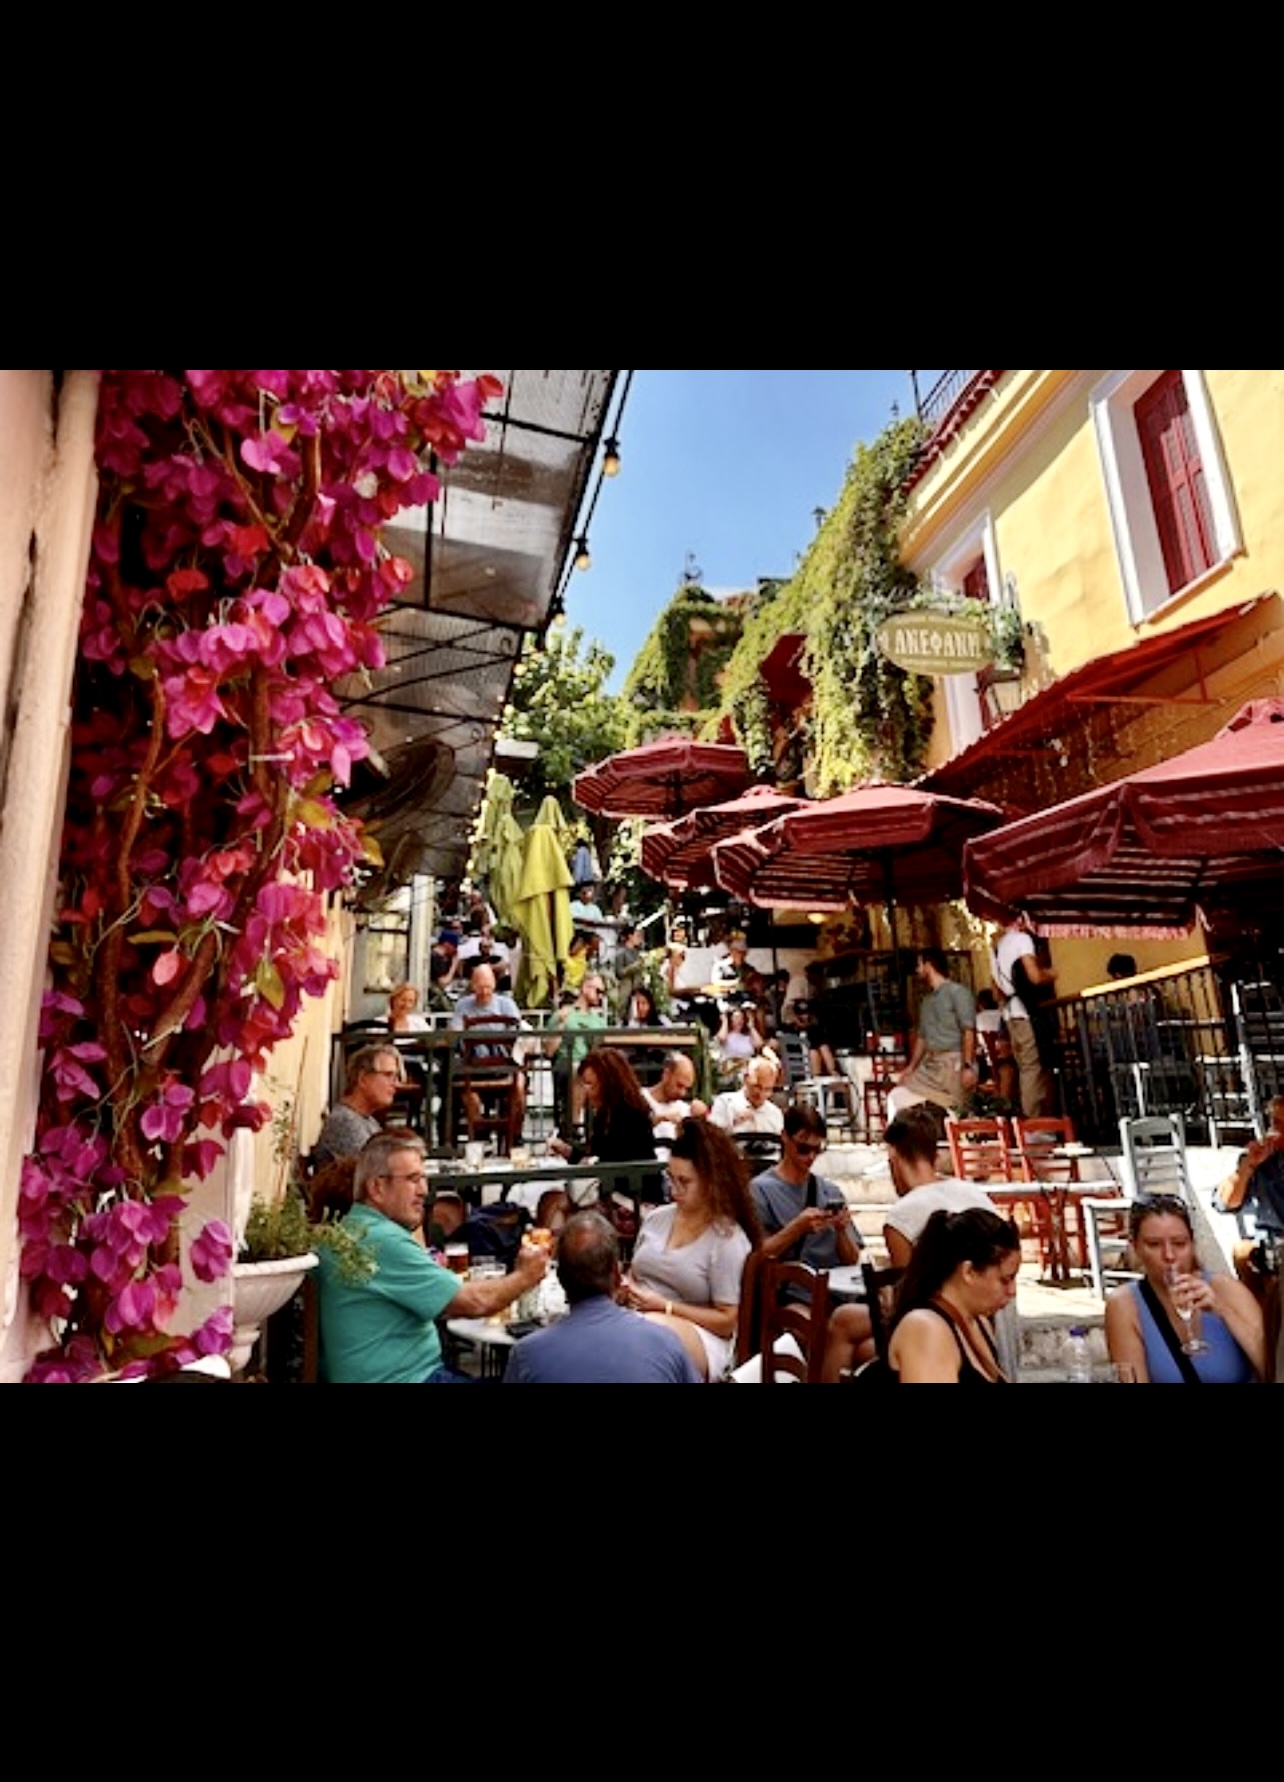 Un groupe de personnes assises à des tables dans un café en plein air en Grèce, une expérience inoubliable et fort intéressante.